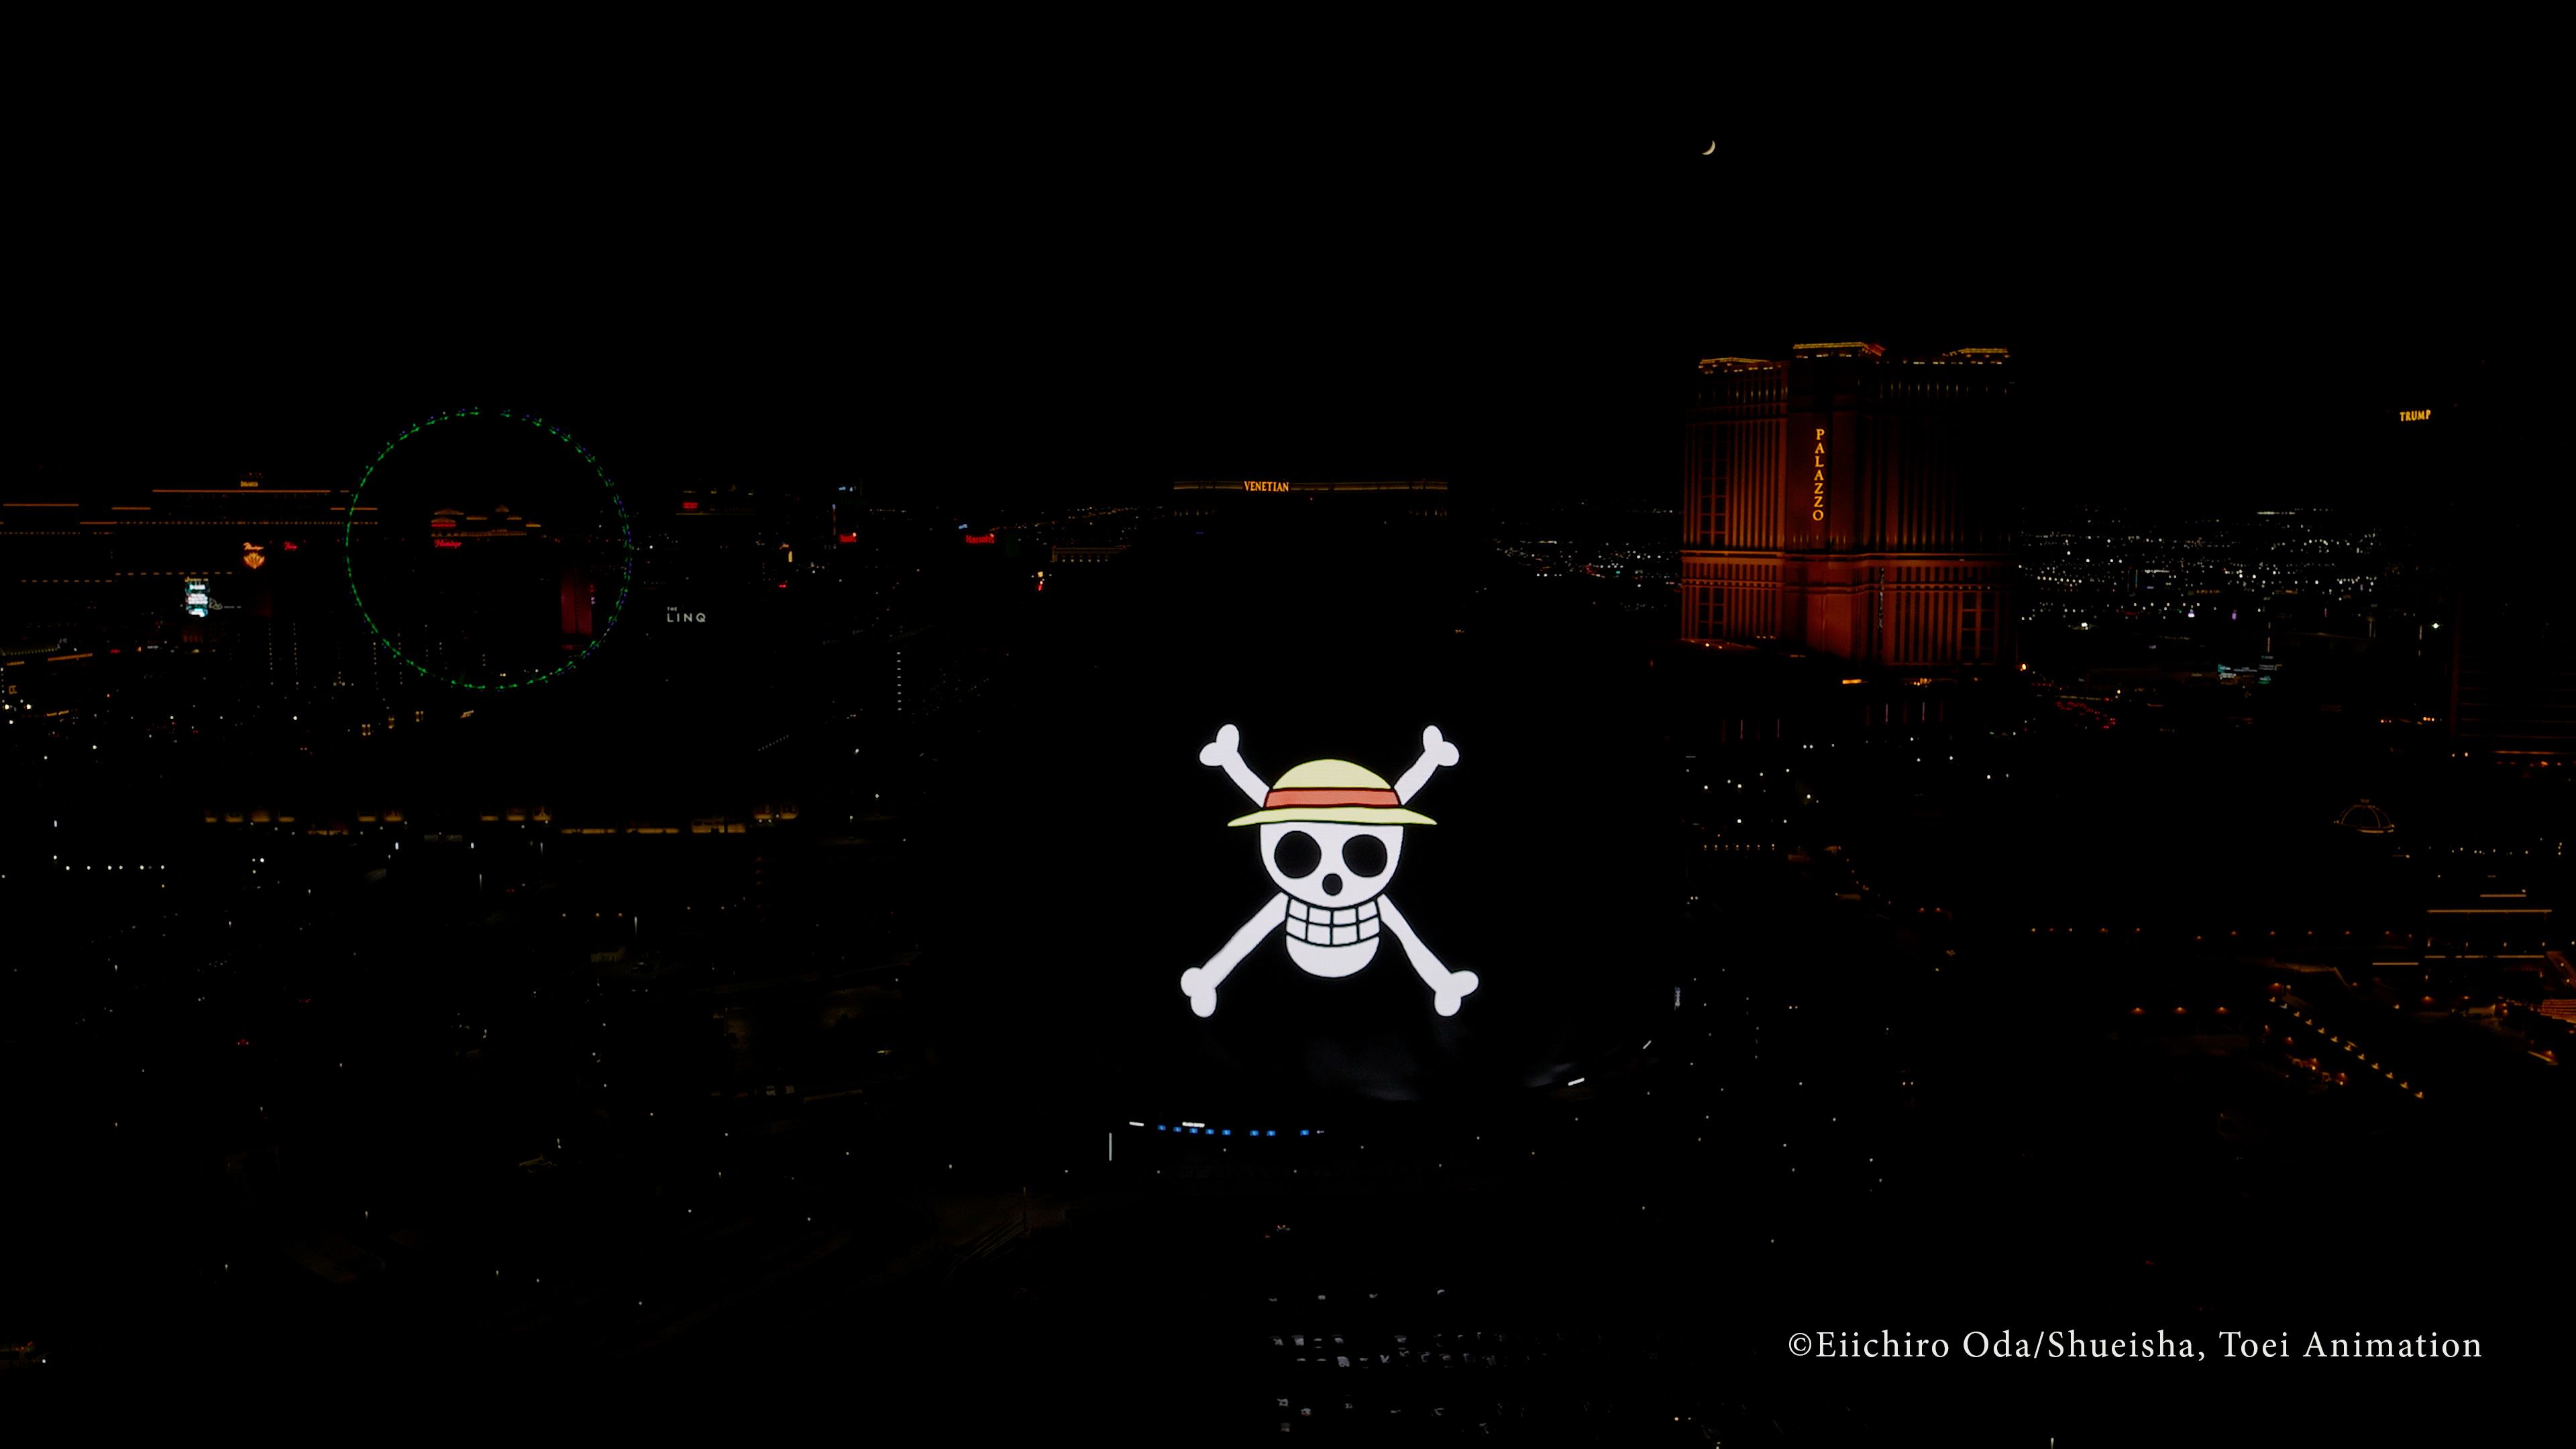 Высококачественные кадры с дрона позволяют фанатам One Piece лучше рассмотреть сферу Лас-Вегаса